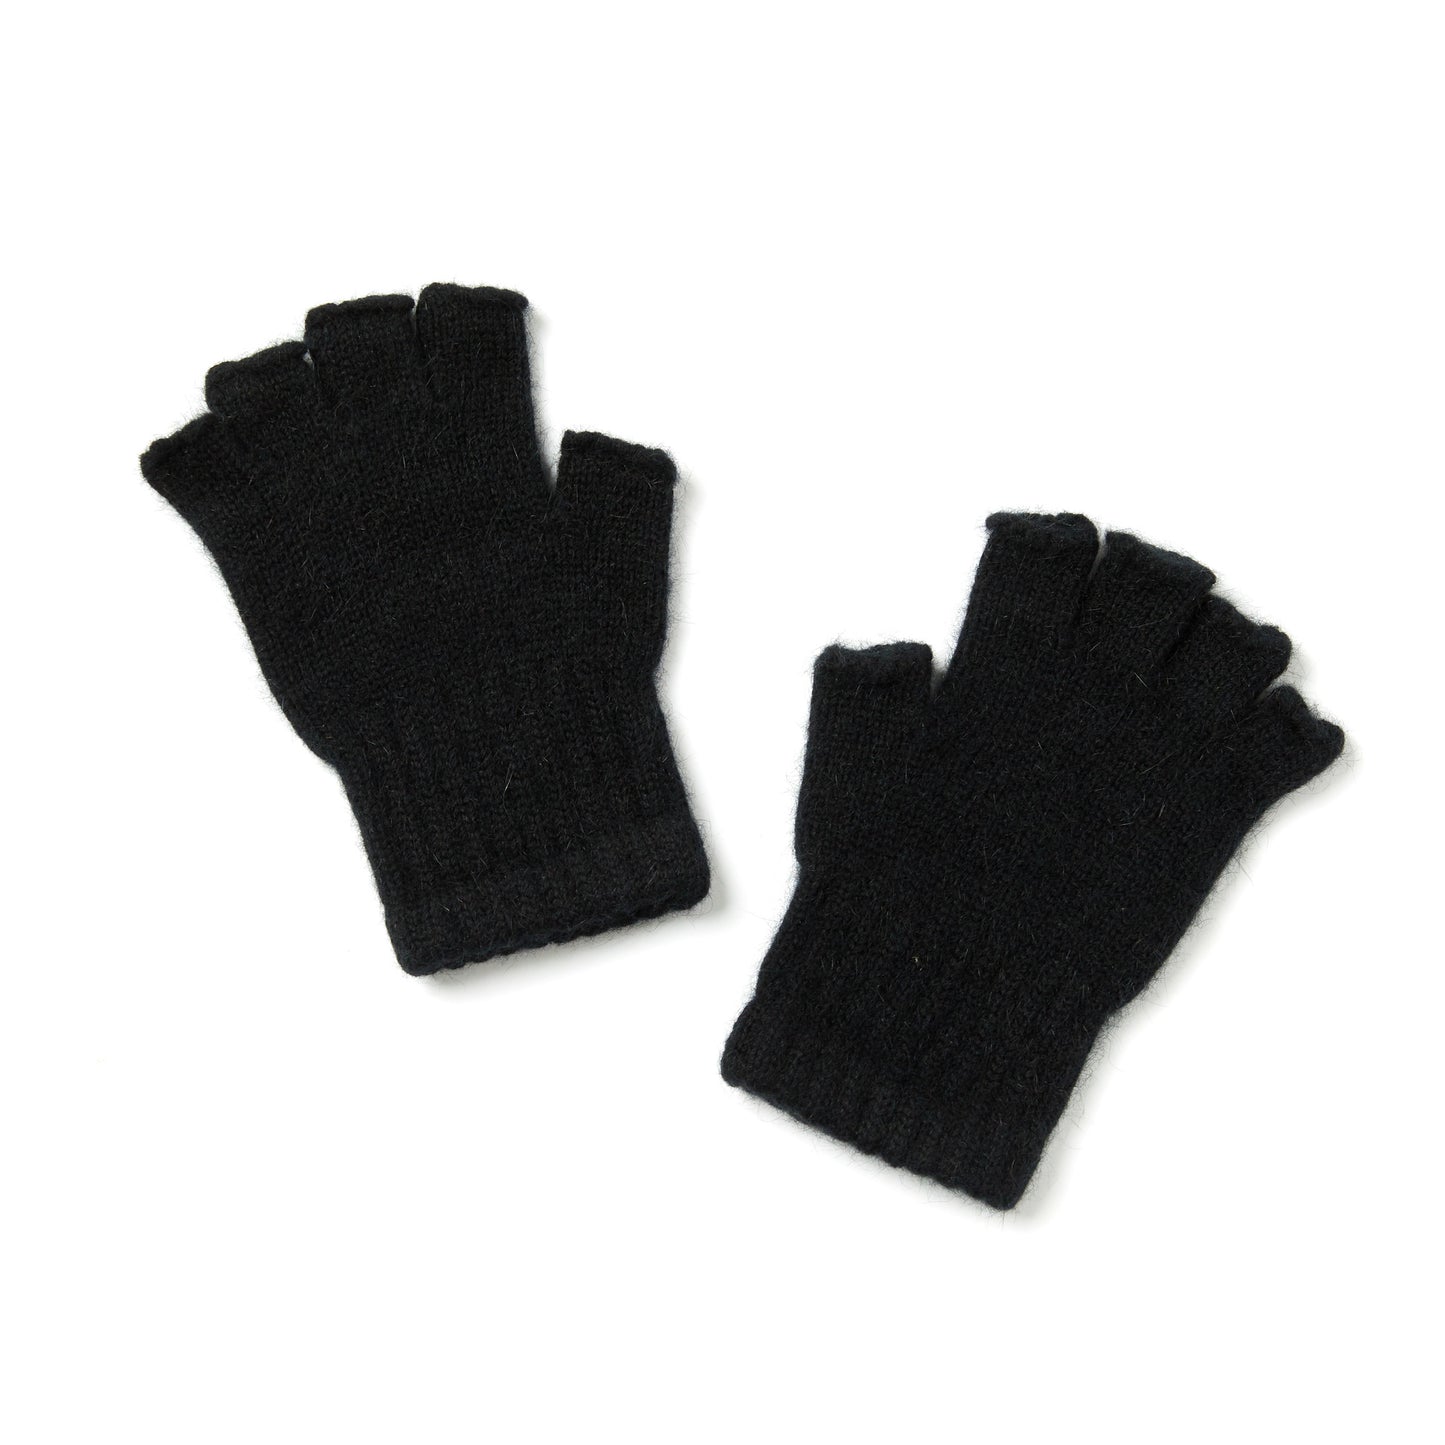 Possum Merino Fingerless Glove